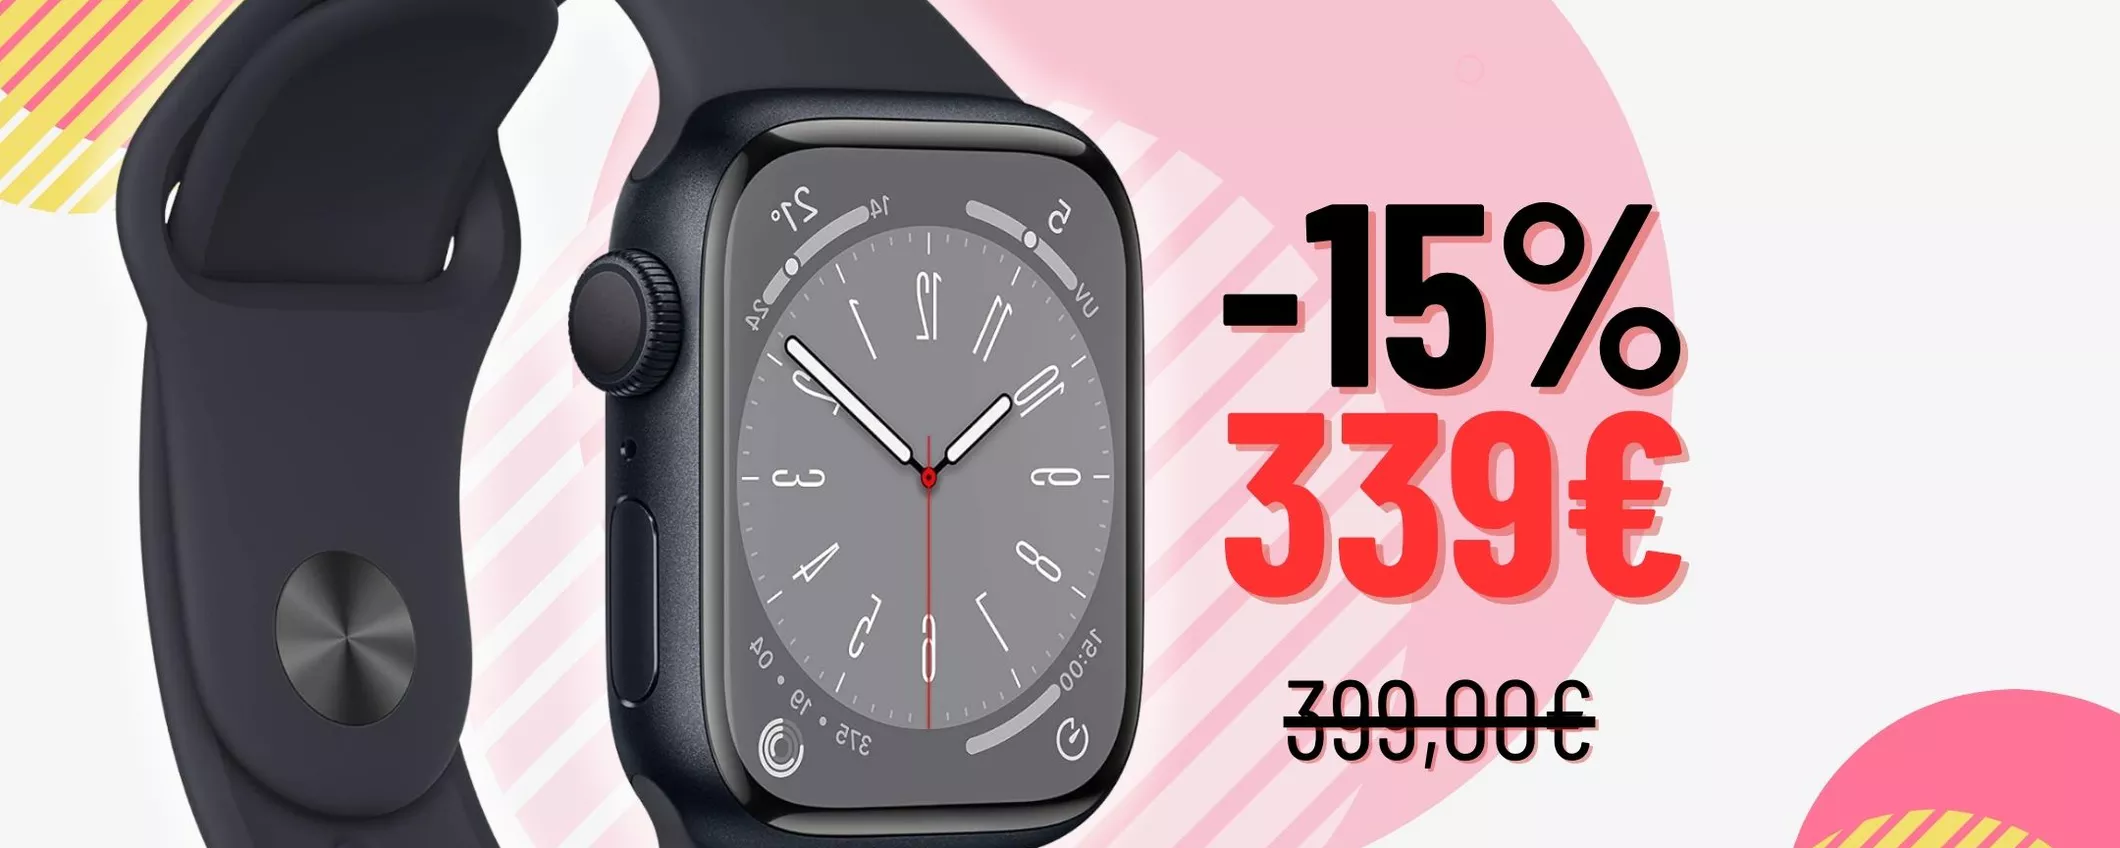 Apple Watch Series 8: SOLO OGGI al 15% in meno su Amazon!